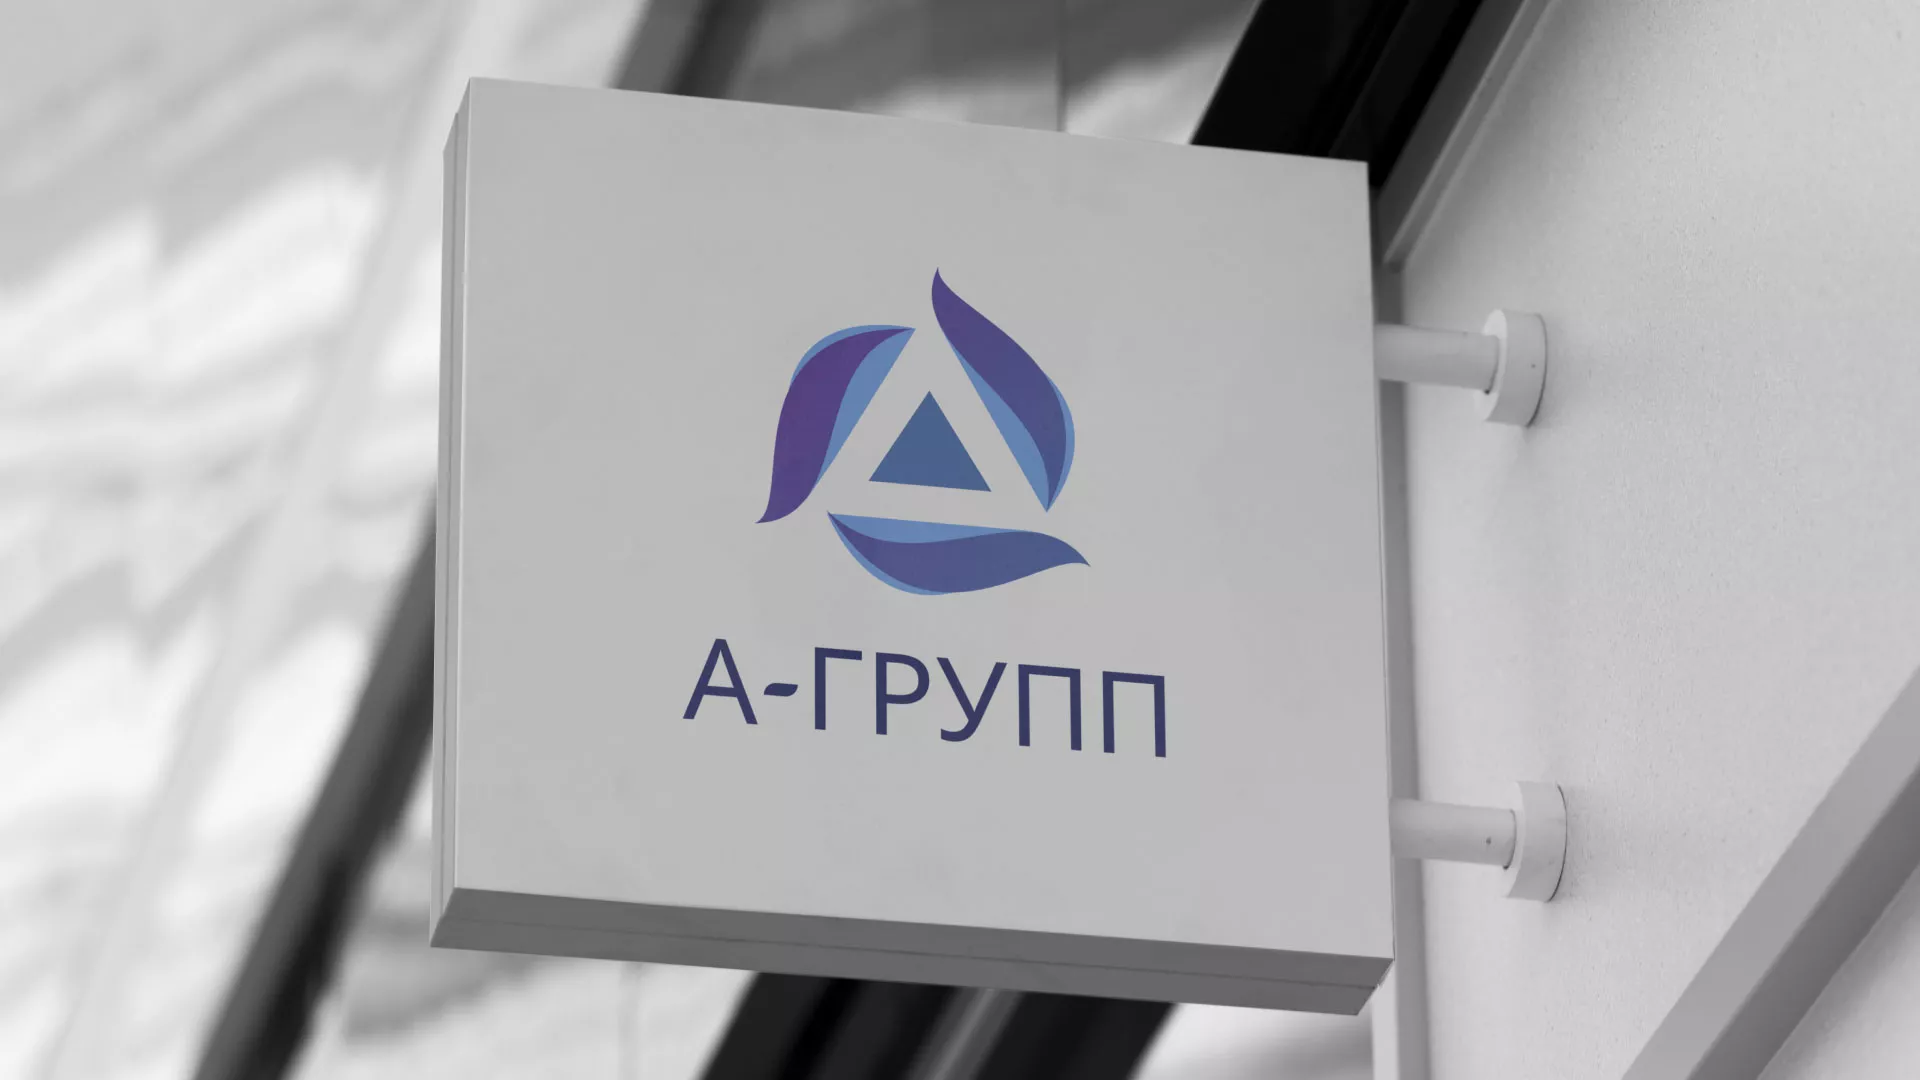 Создание логотипа компании «А-ГРУПП» в Шебекино